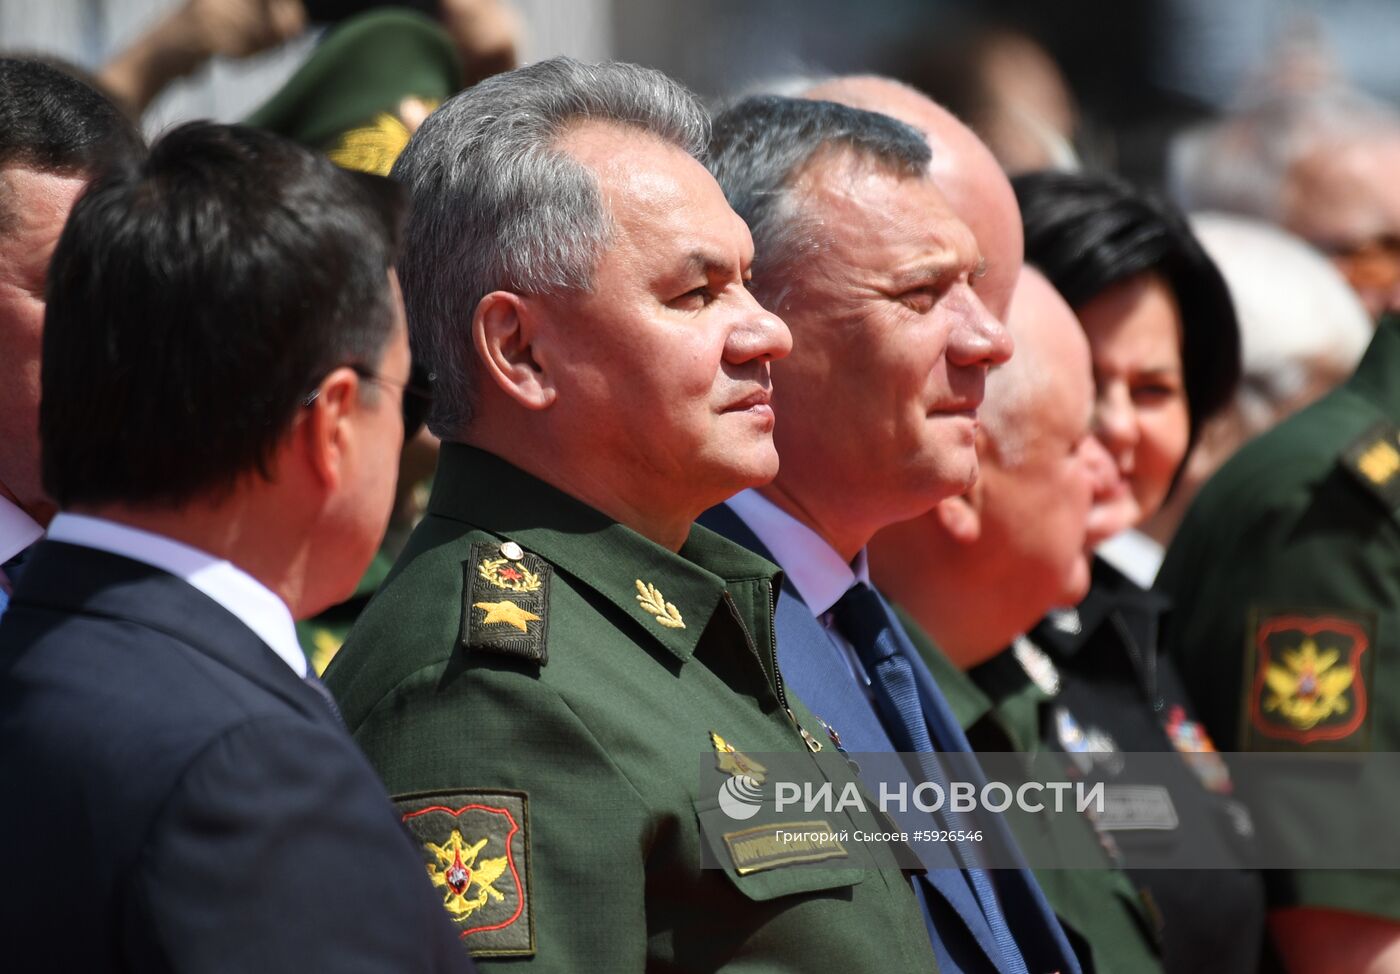 Открытие международного военно-технического форума "Армия-2019"